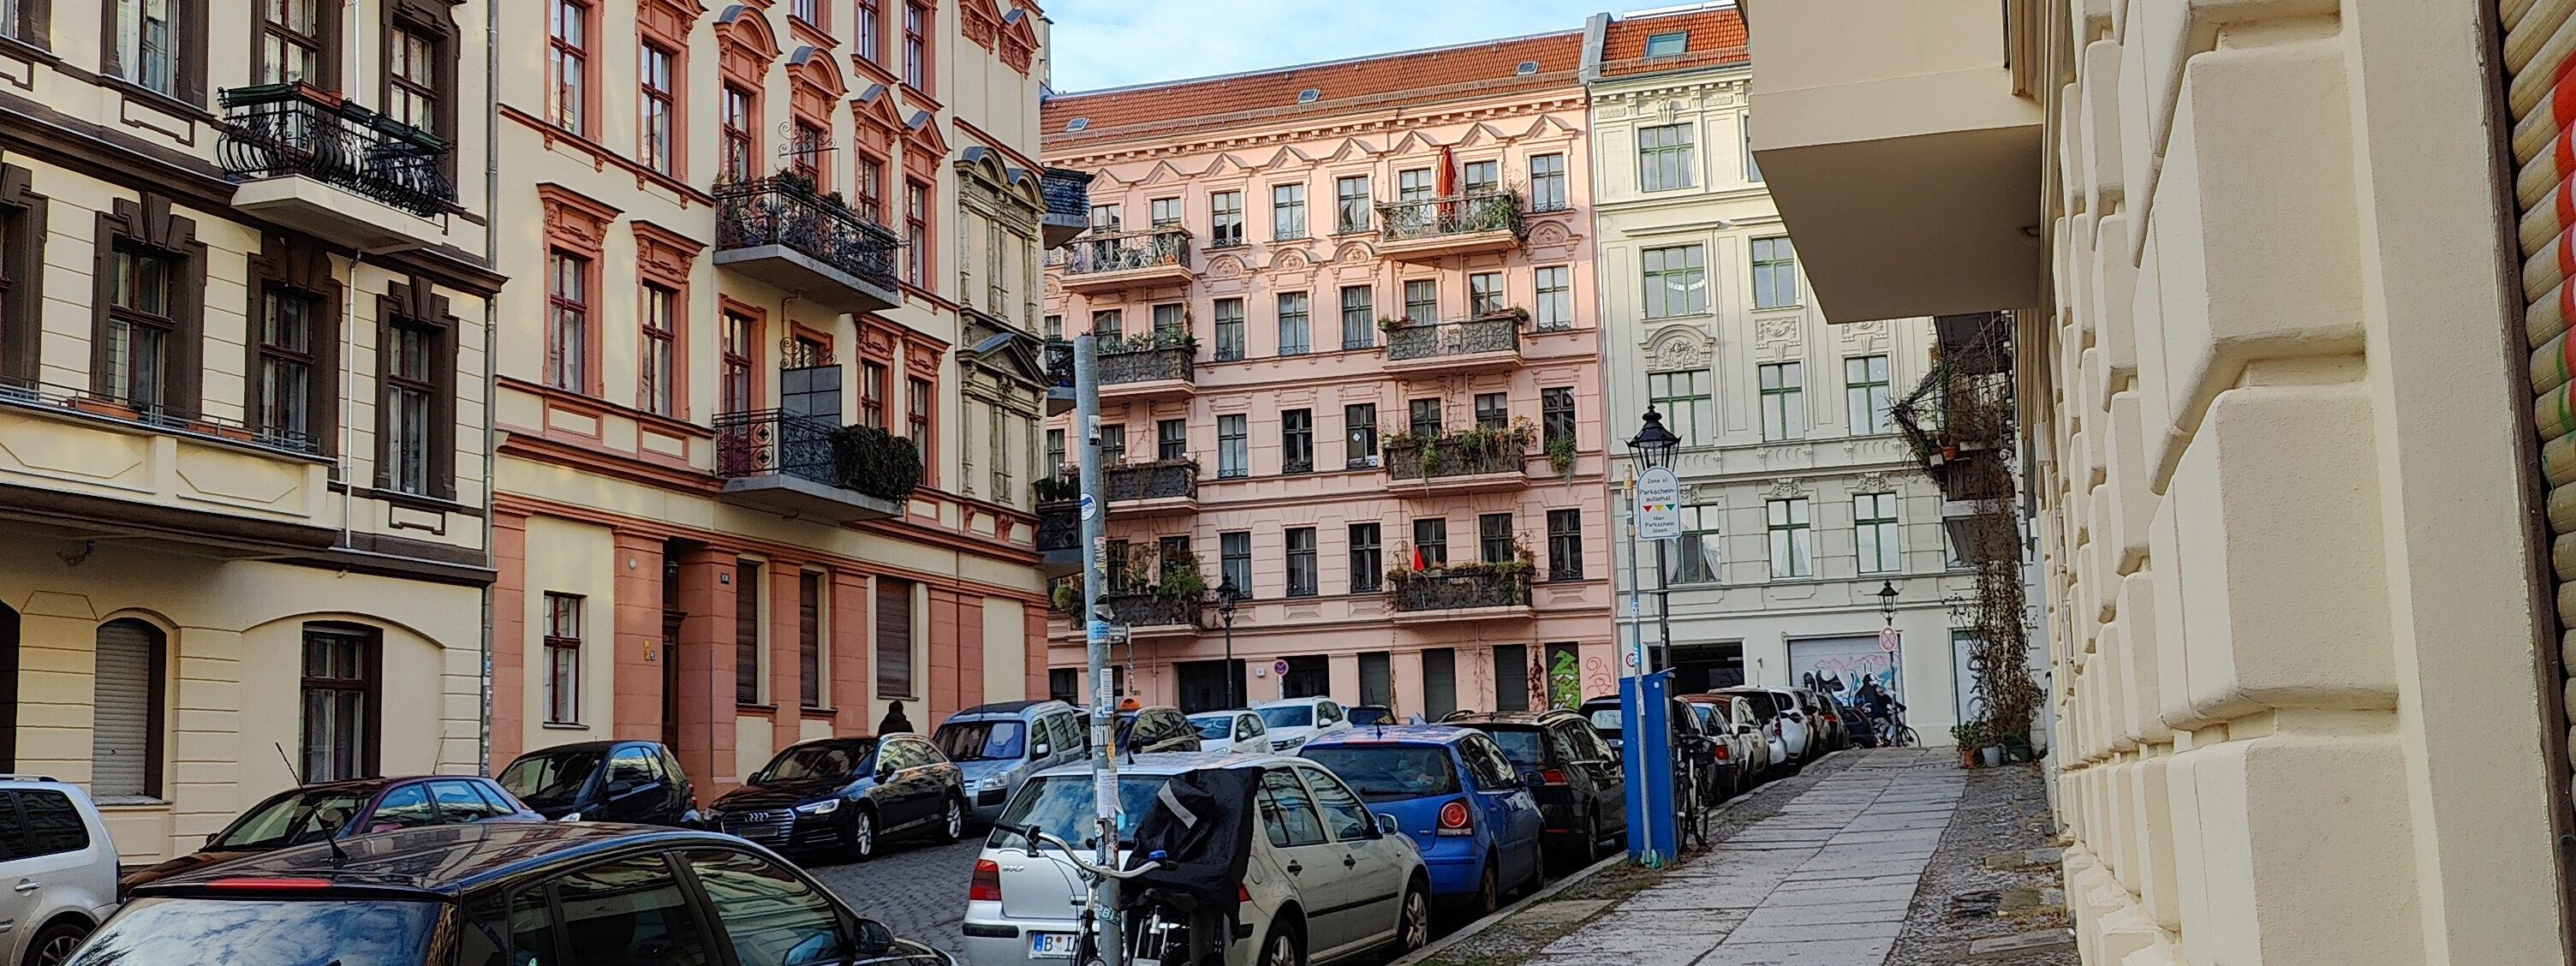 Strassenzug mit Gründerzeithäusern in Berlin. Im Vordergrund stehen Autos.